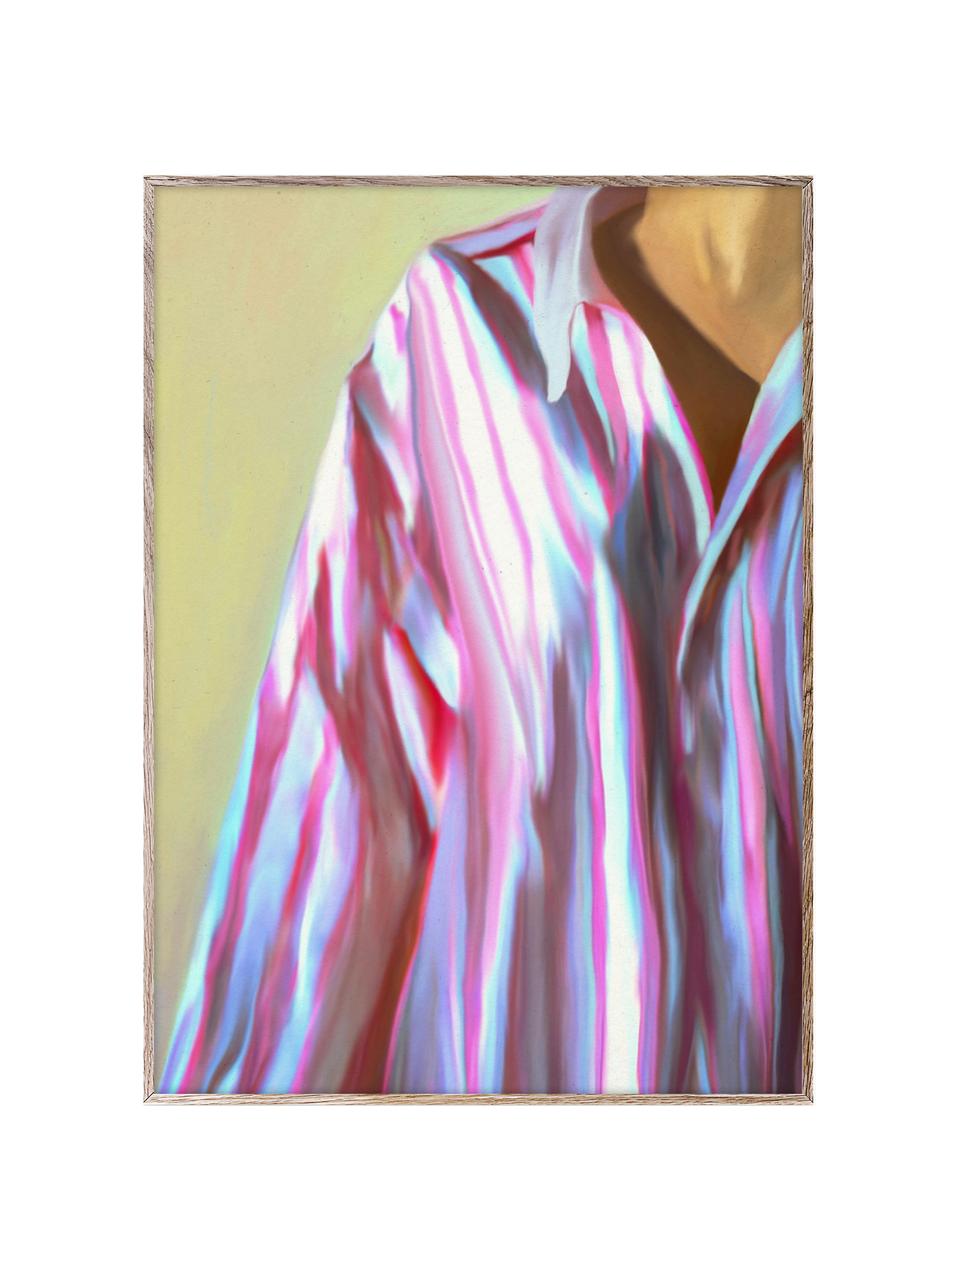 Poster Dad Shirt, 210 g de papier mat de la marque Hahnemühle, impression numérique avec 10 couleurs résistantes aux UV, Vert olive, tons roses et bleus, larg. 50 x haut. 70 cm